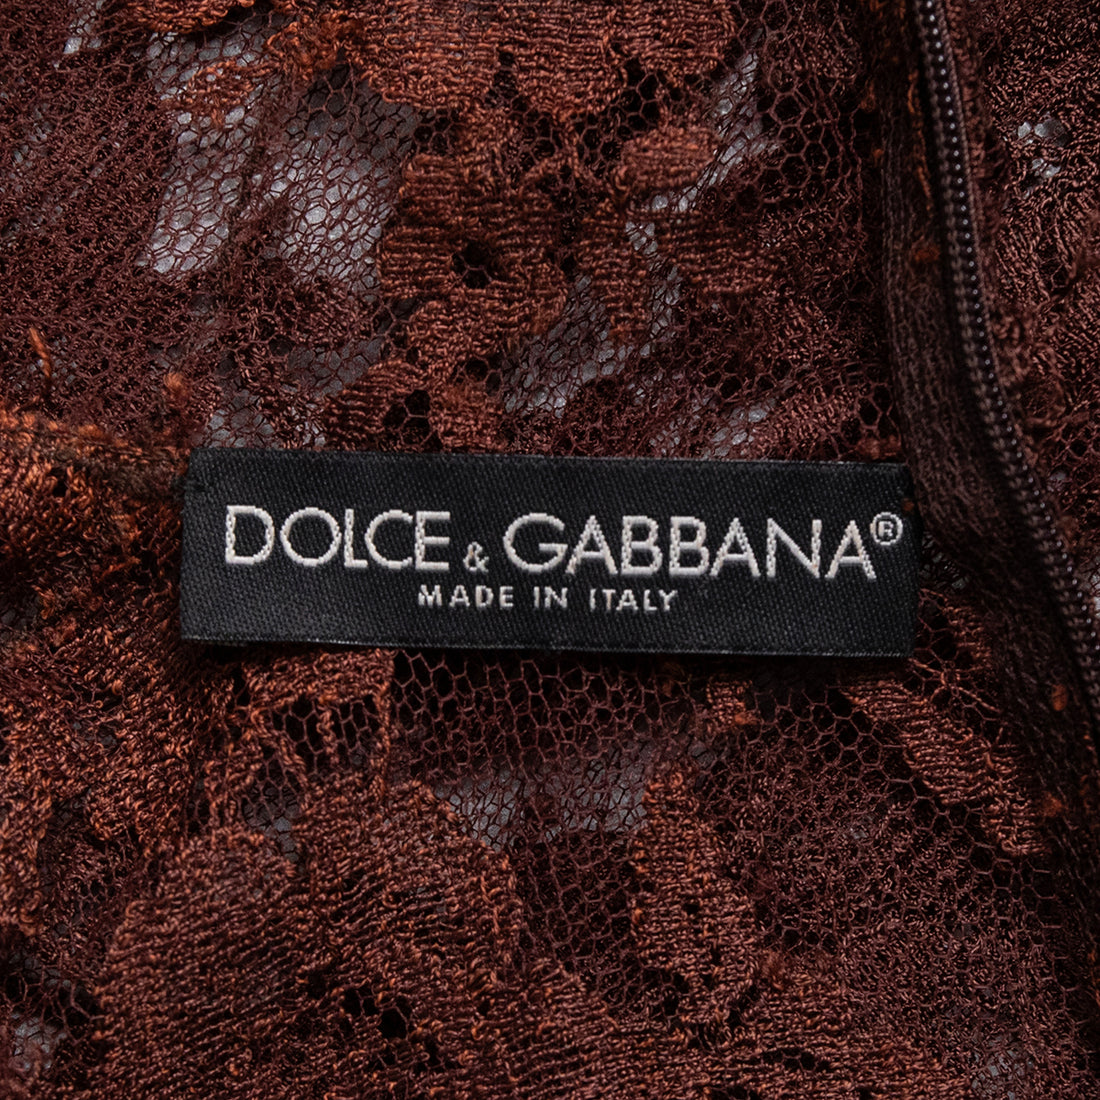 Dolce & Gabbana Semitransparentes ärmelloses Spitzentop mit aufwändig bedrucktem Seidenüberwurf